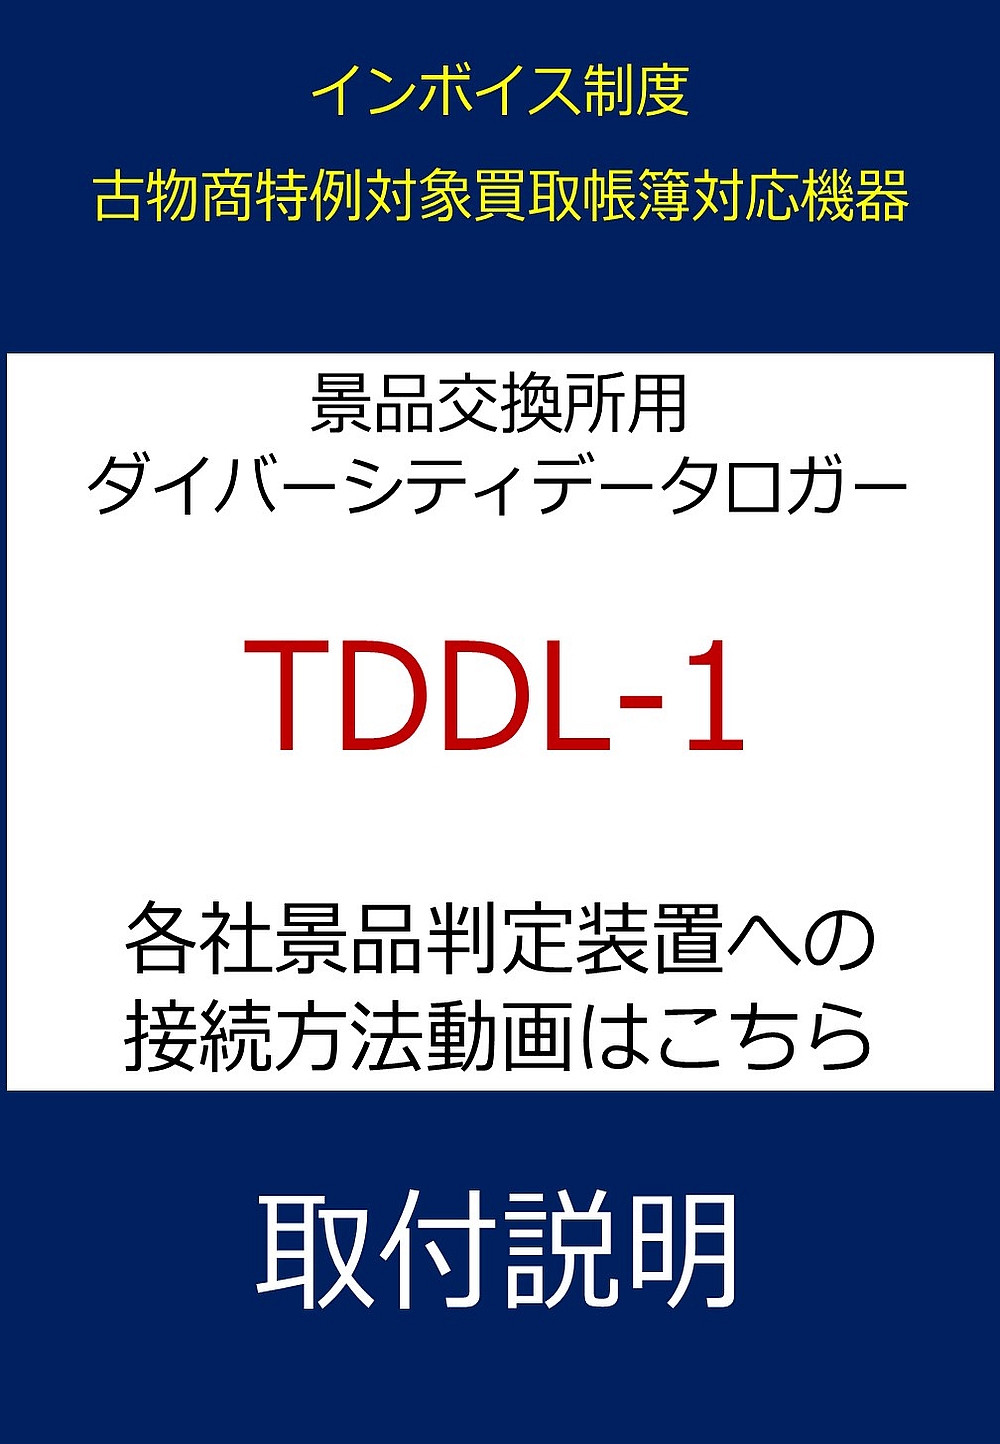 TDDL-1 カタログ